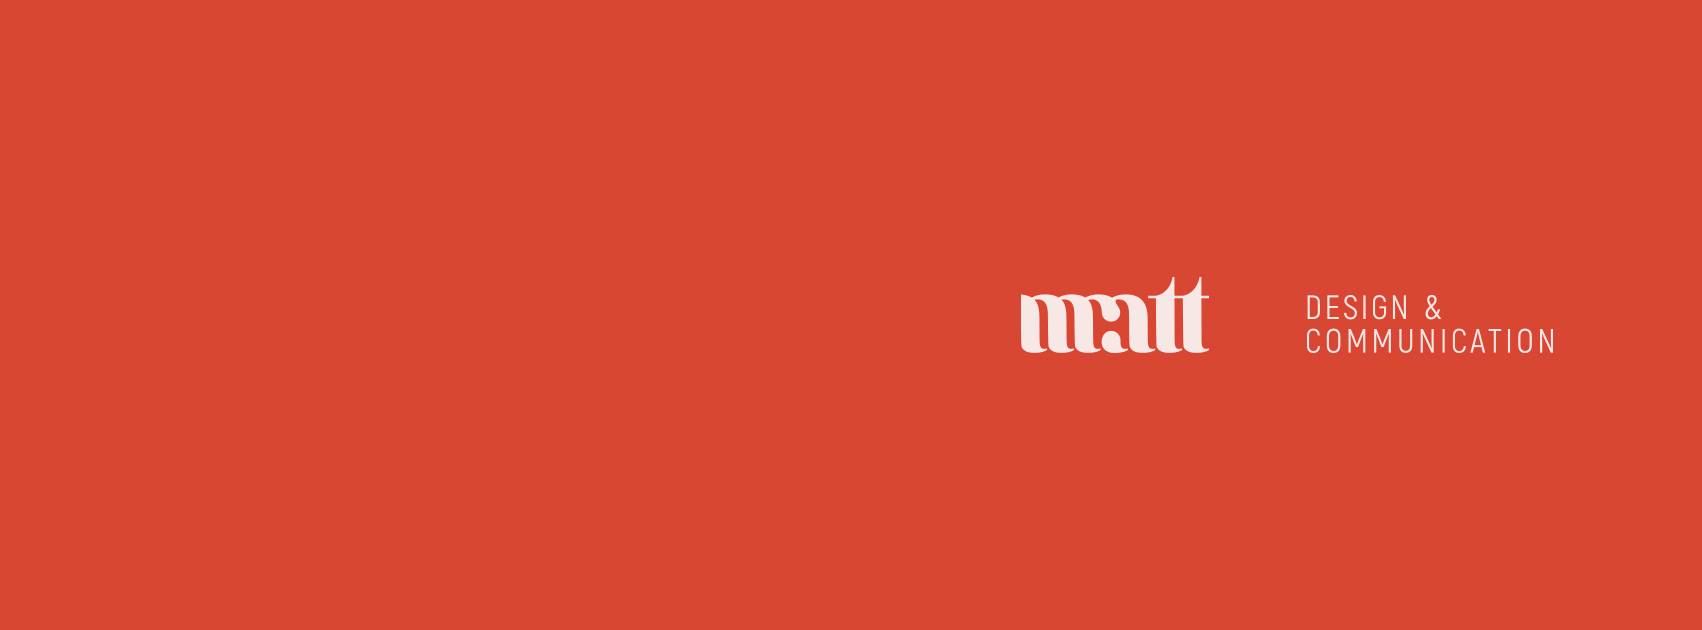 Bandeau rouge avec logo Matt Design et Communication